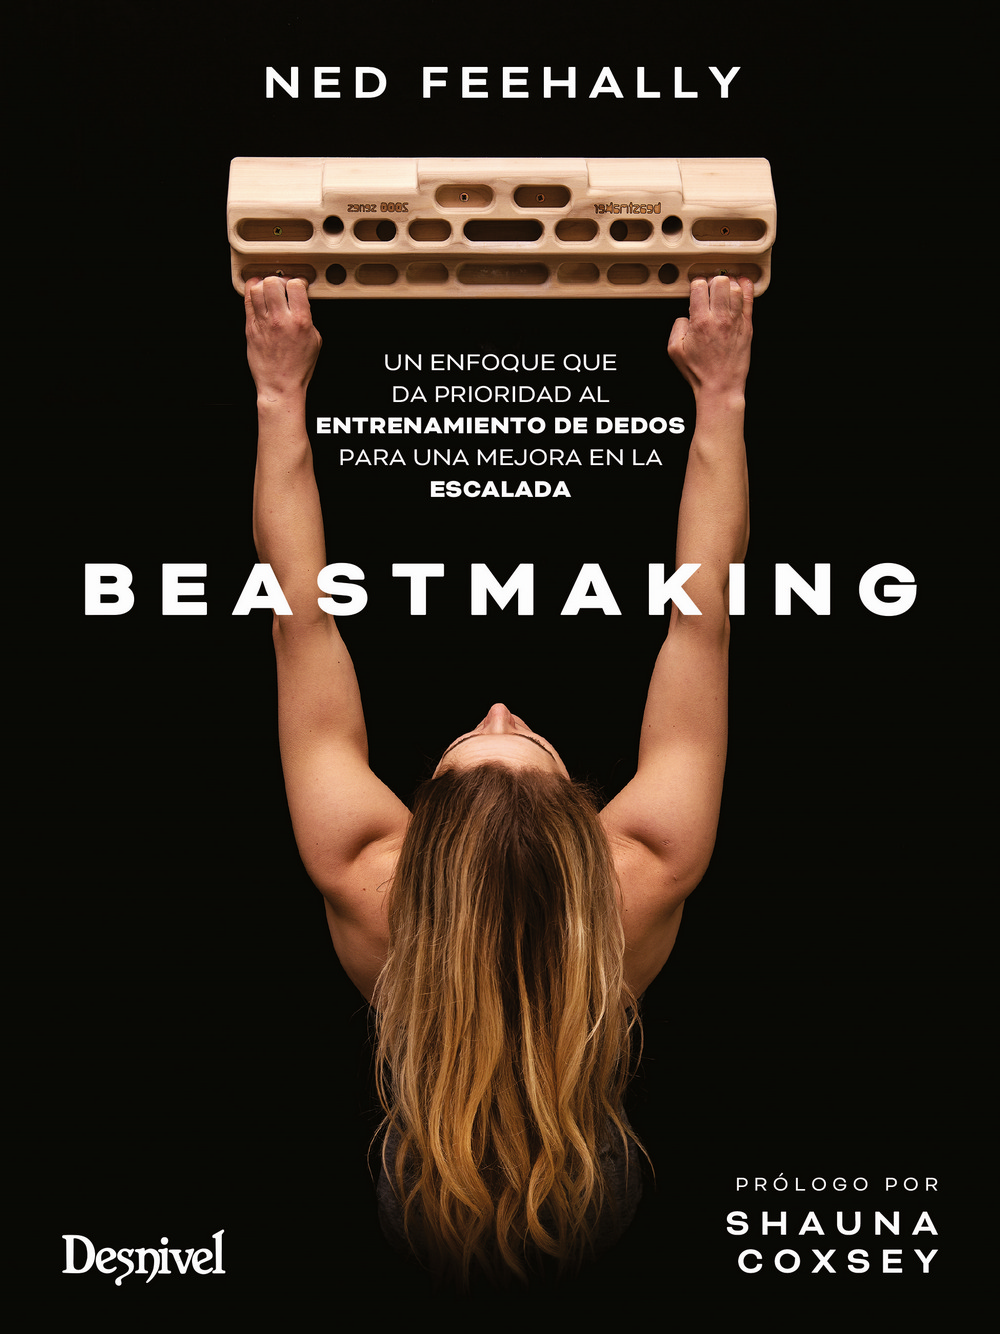 Beastmaking, el manual sobre el entrenamiento de dedos en la escalada